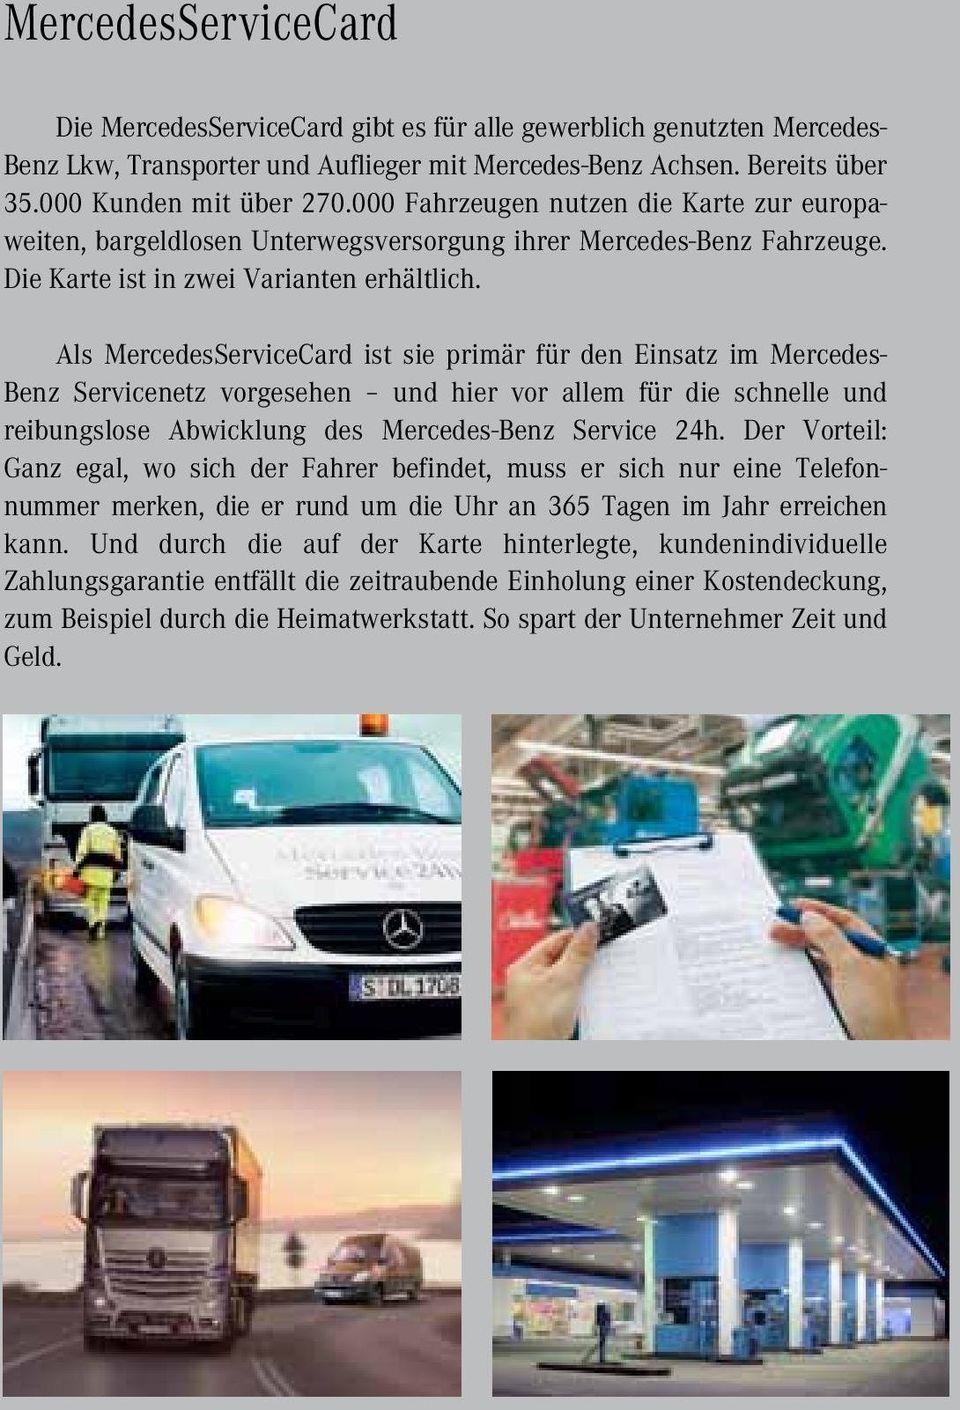 Als MercedesServiceCard ist sie primär für den Einsatz im Mercedes- Benz Servicenetz vorgesehen und hier vor allem für die schnelle und reibungslose Abwicklung des Mercedes-Benz Service 24h.